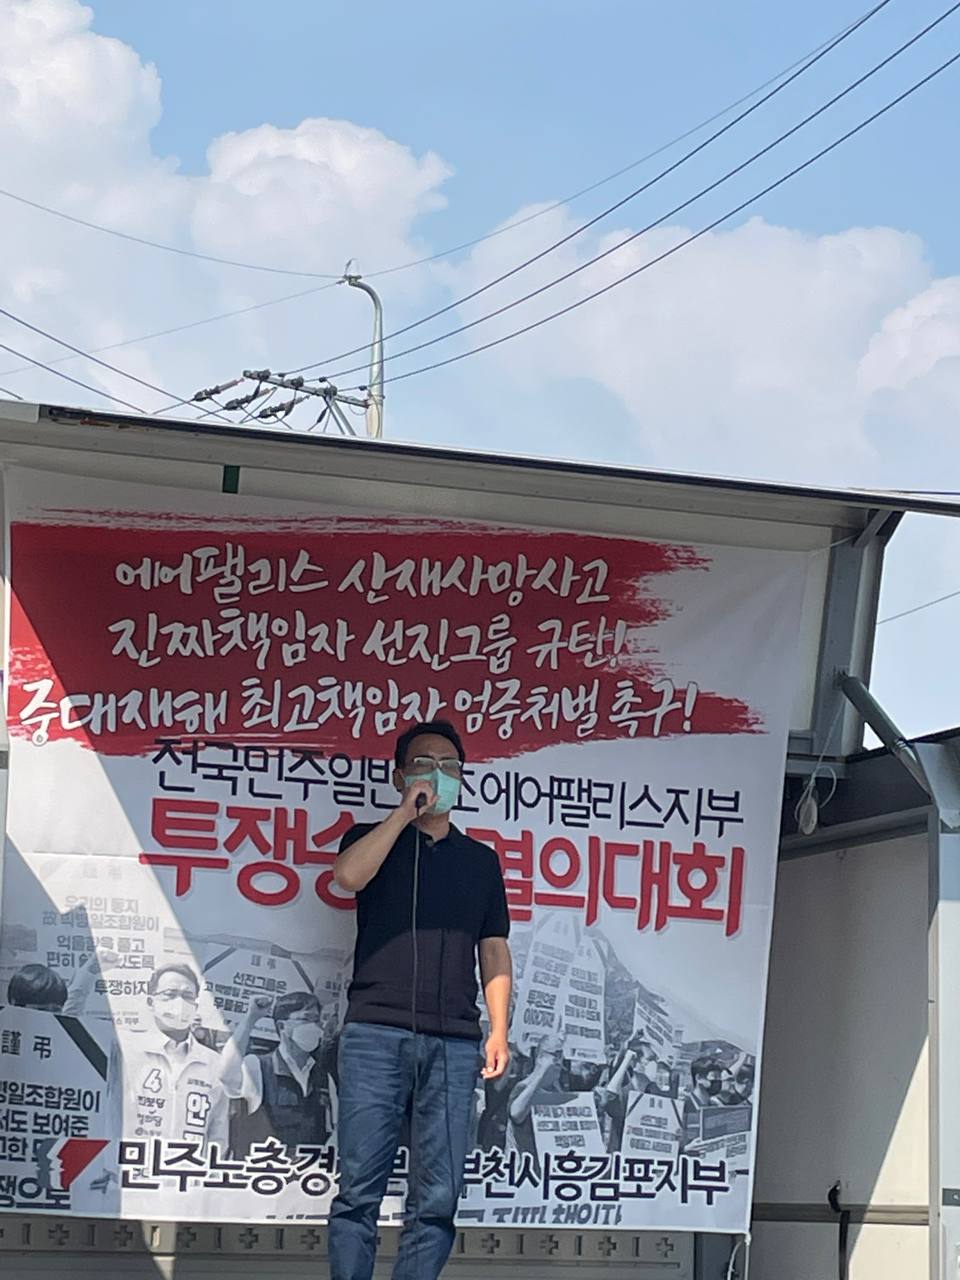 김포에서 시민사회가 함께 승리할 때 까지 함께 하겠다며 결의를 다지는 김포민주시민연대 안재범공동대표